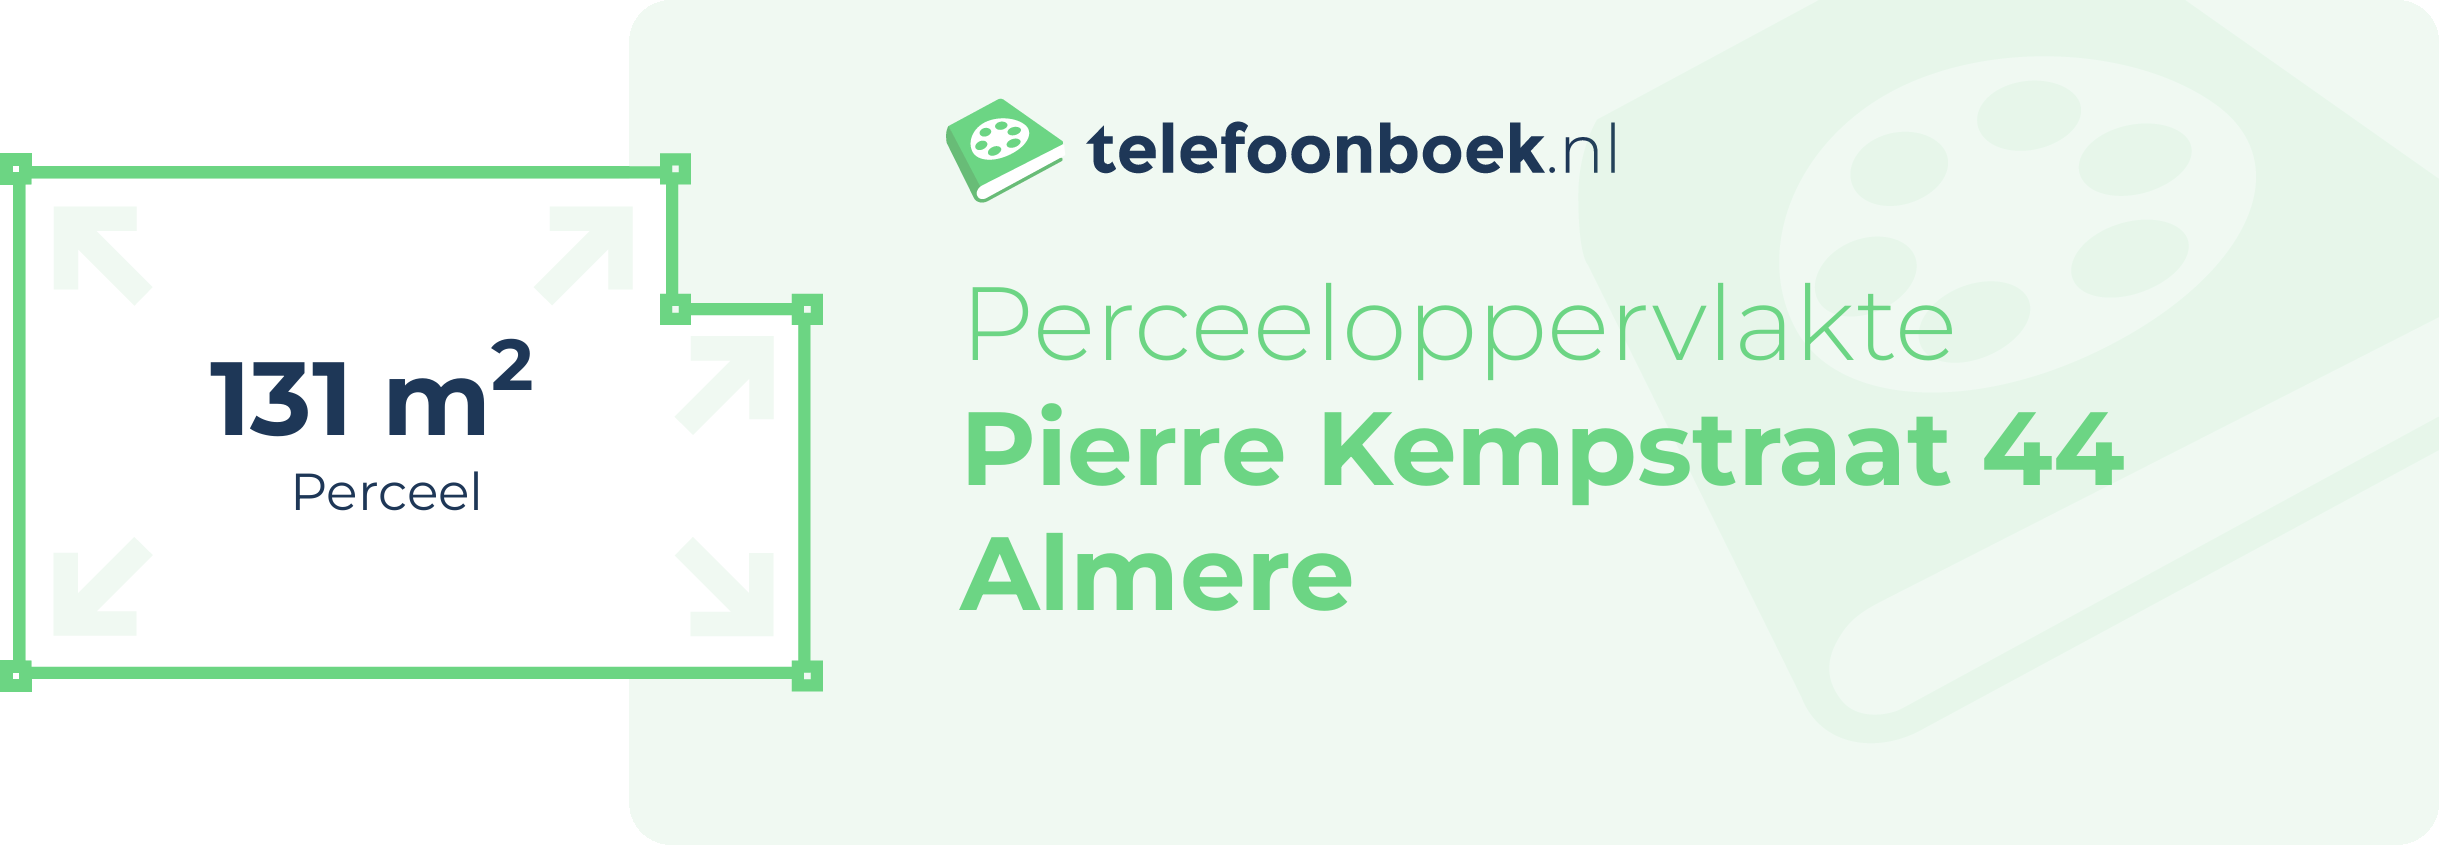 Perceeloppervlakte Pierre Kempstraat 44 Almere